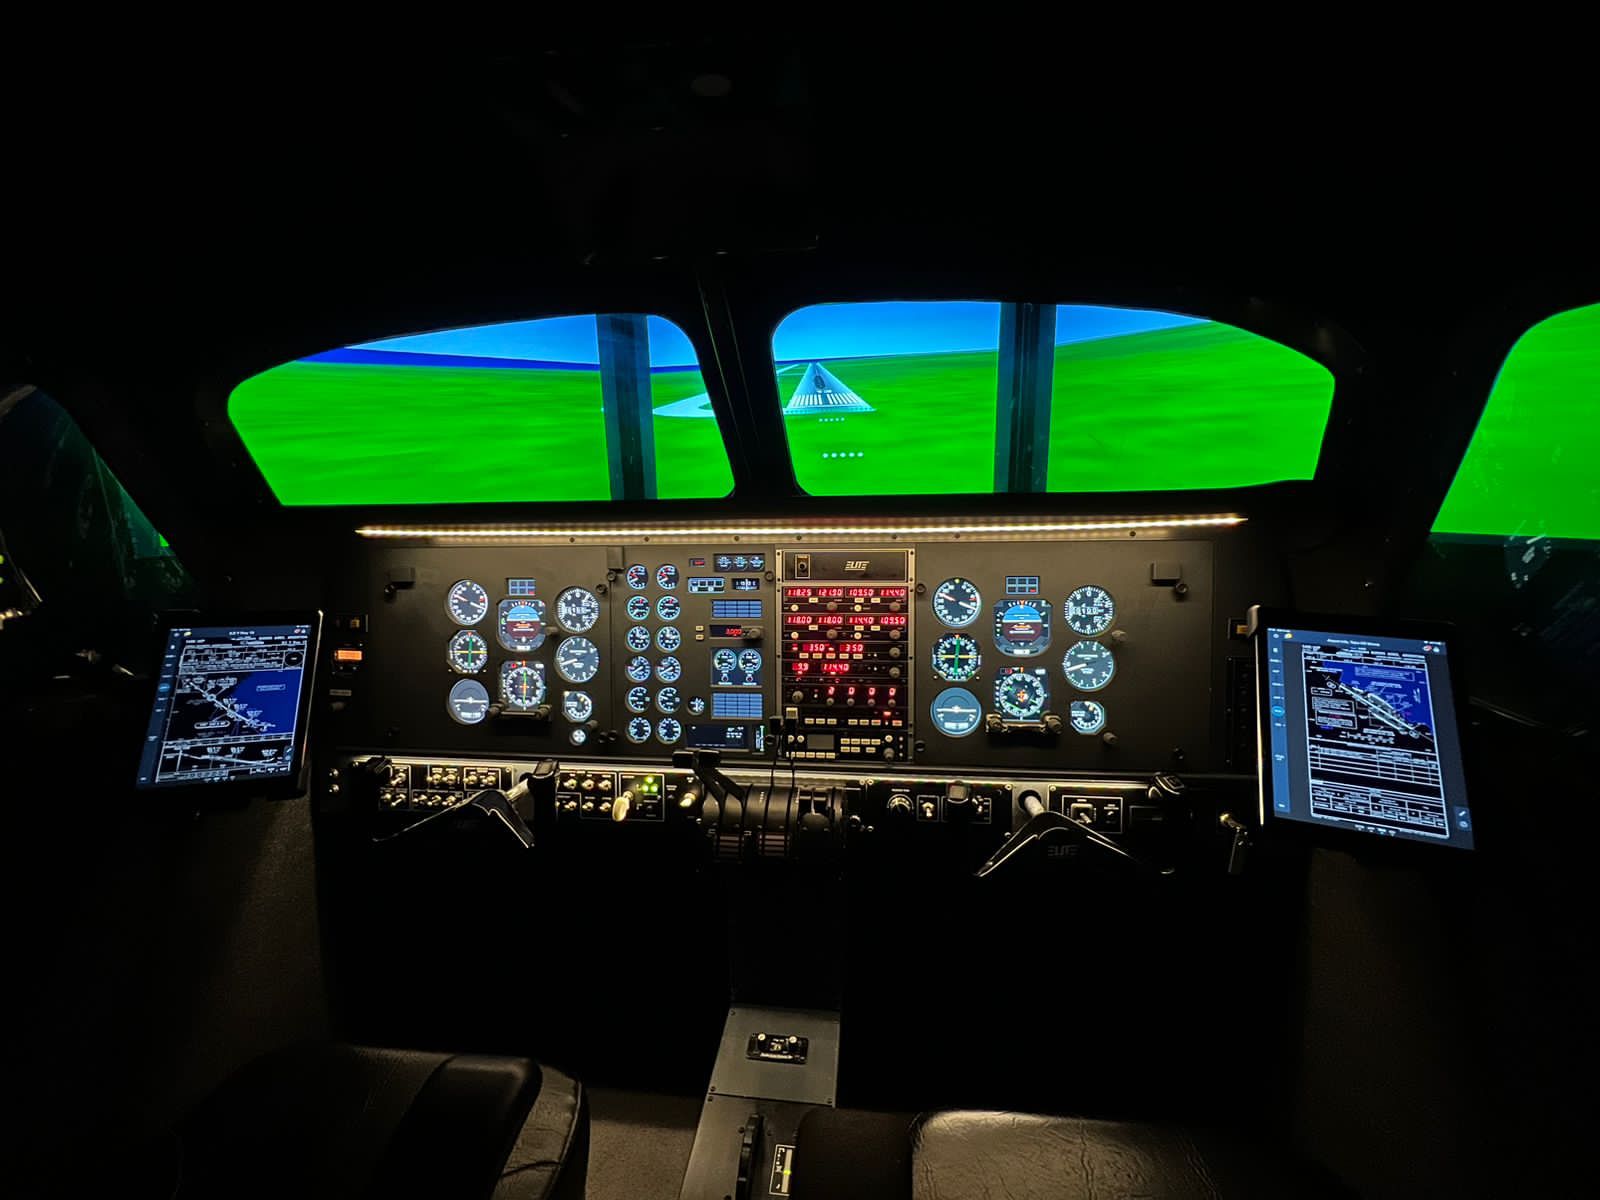 Simuladores de vuelo para pilotos profesionales: ¿por qué son importantes?